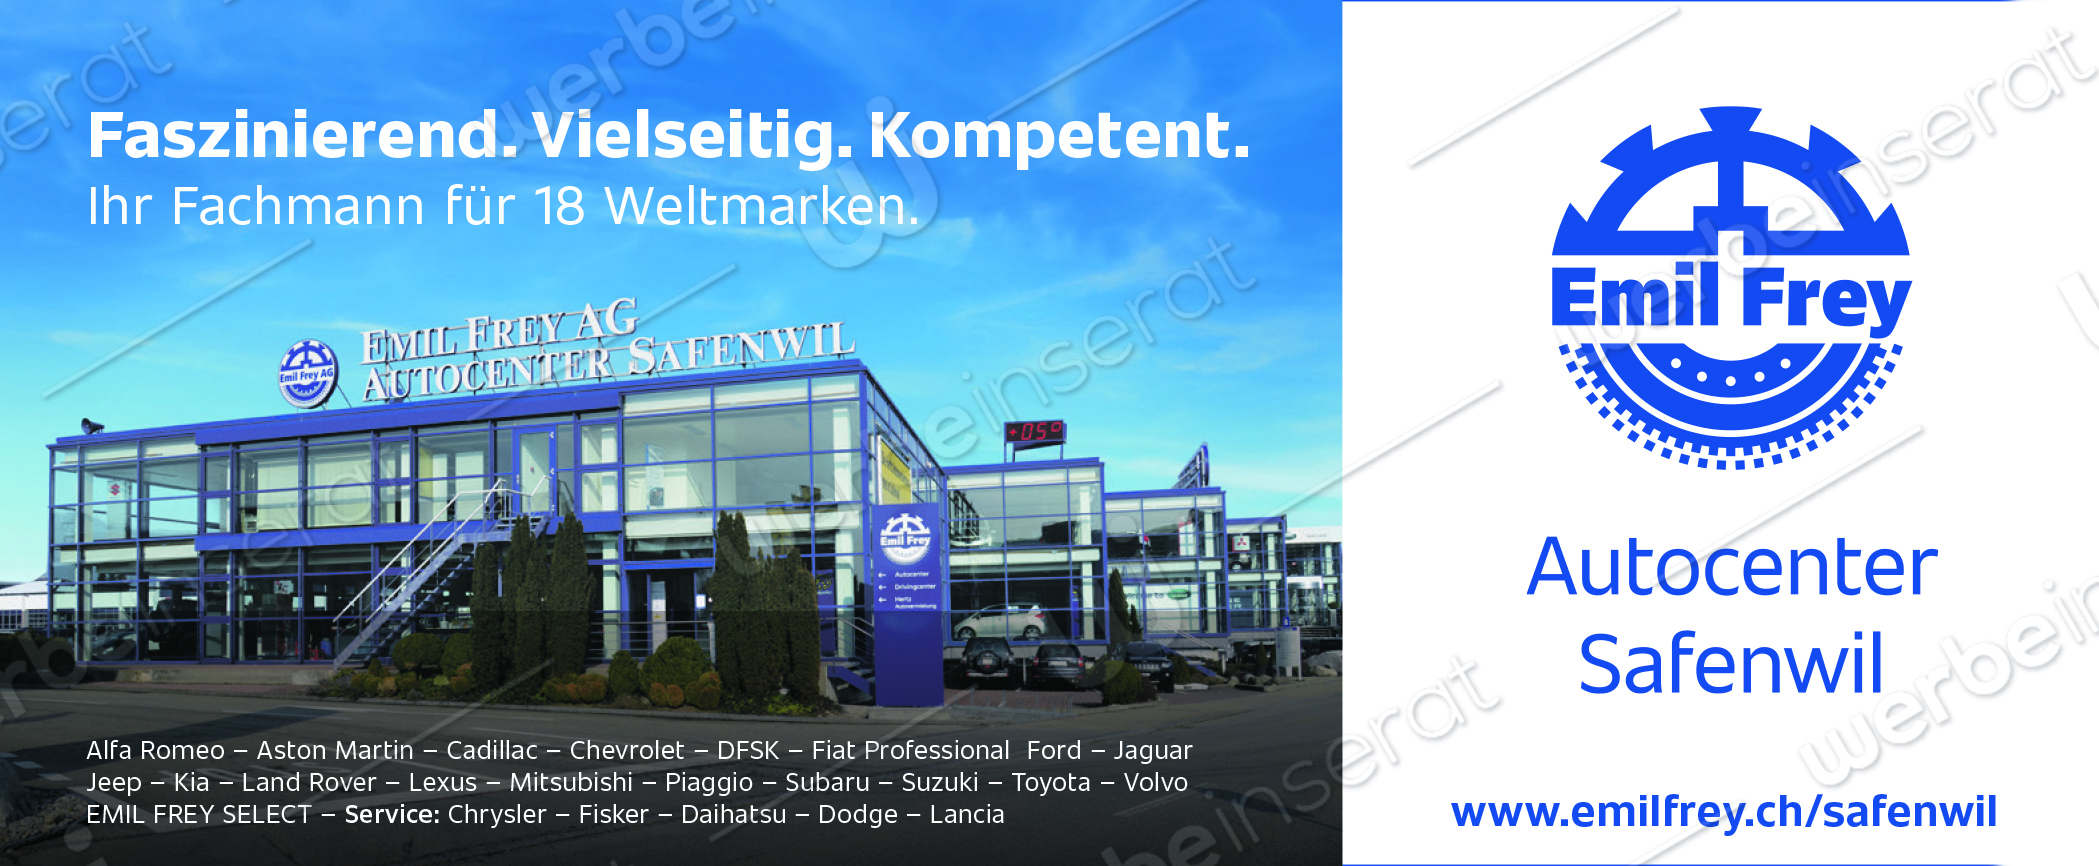 Emil Frey Autocenter Safenwil